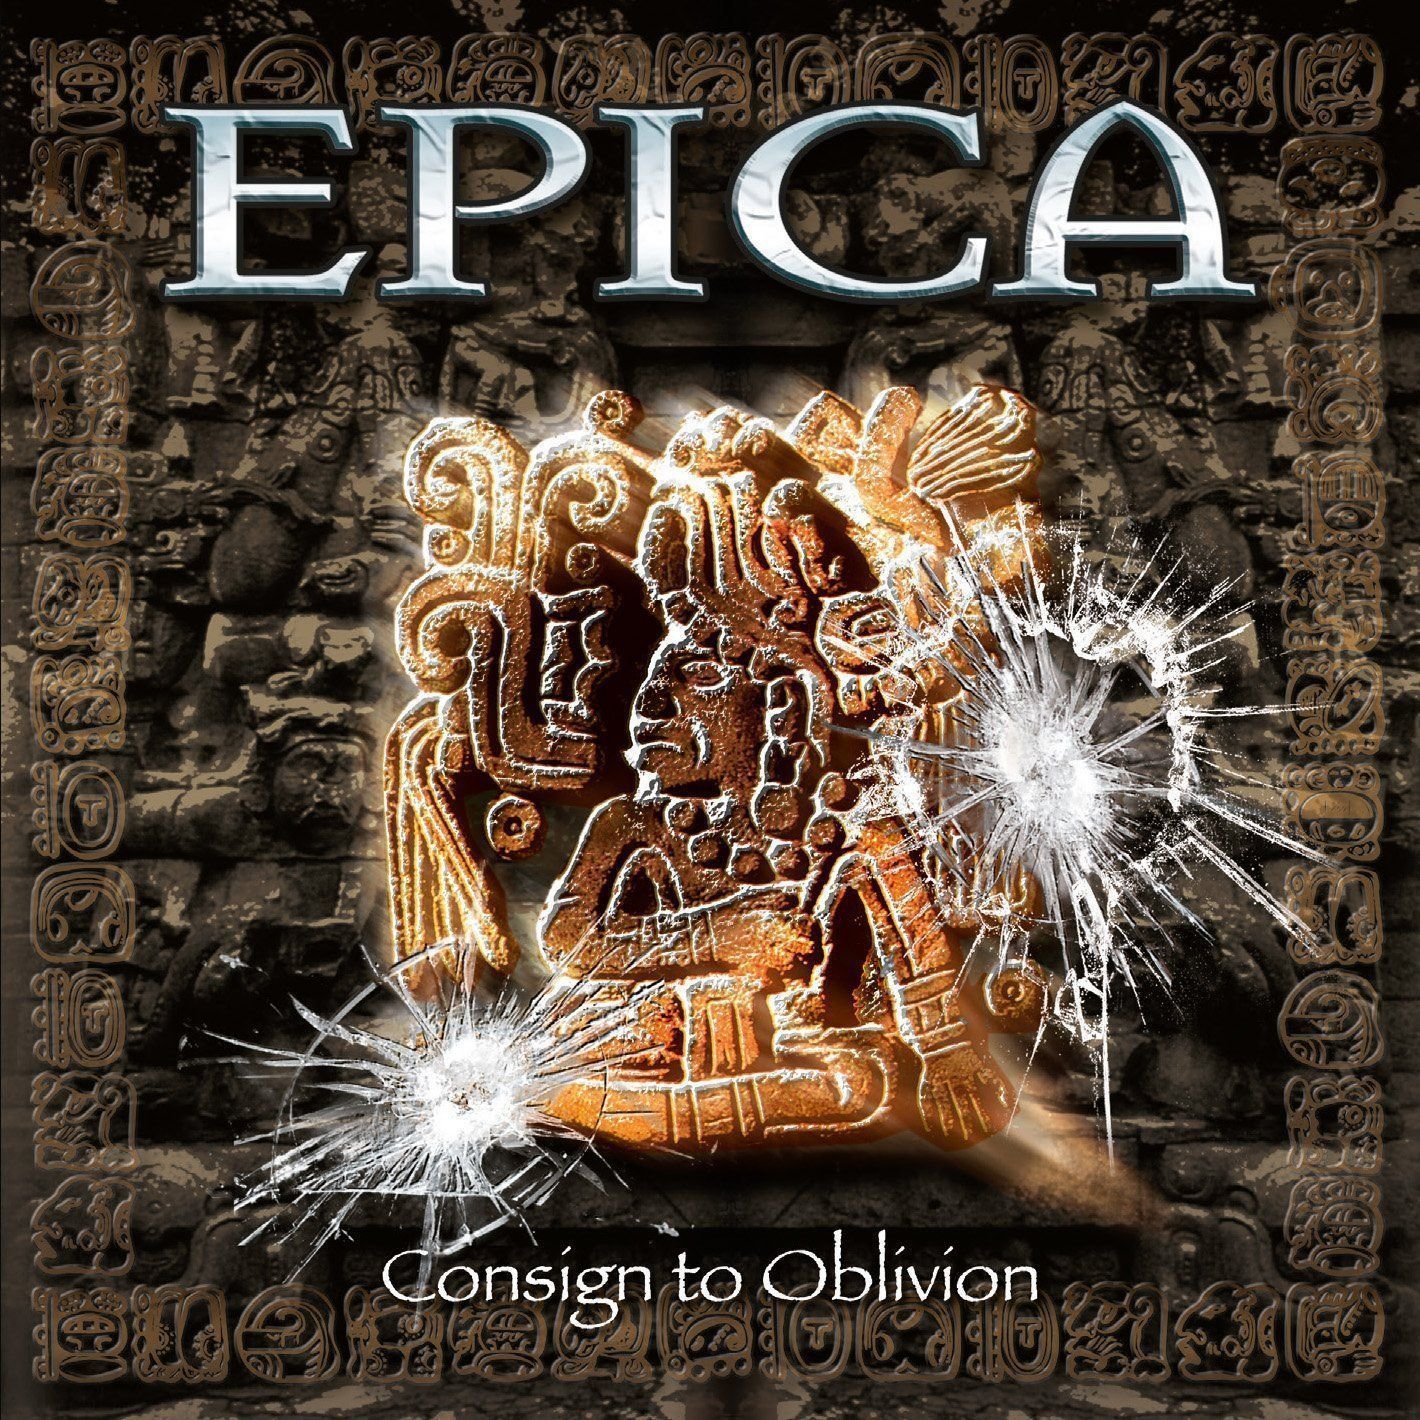 Disc de vinil Epica - Consign To Oblivion - Expanded Edition (2 LP)